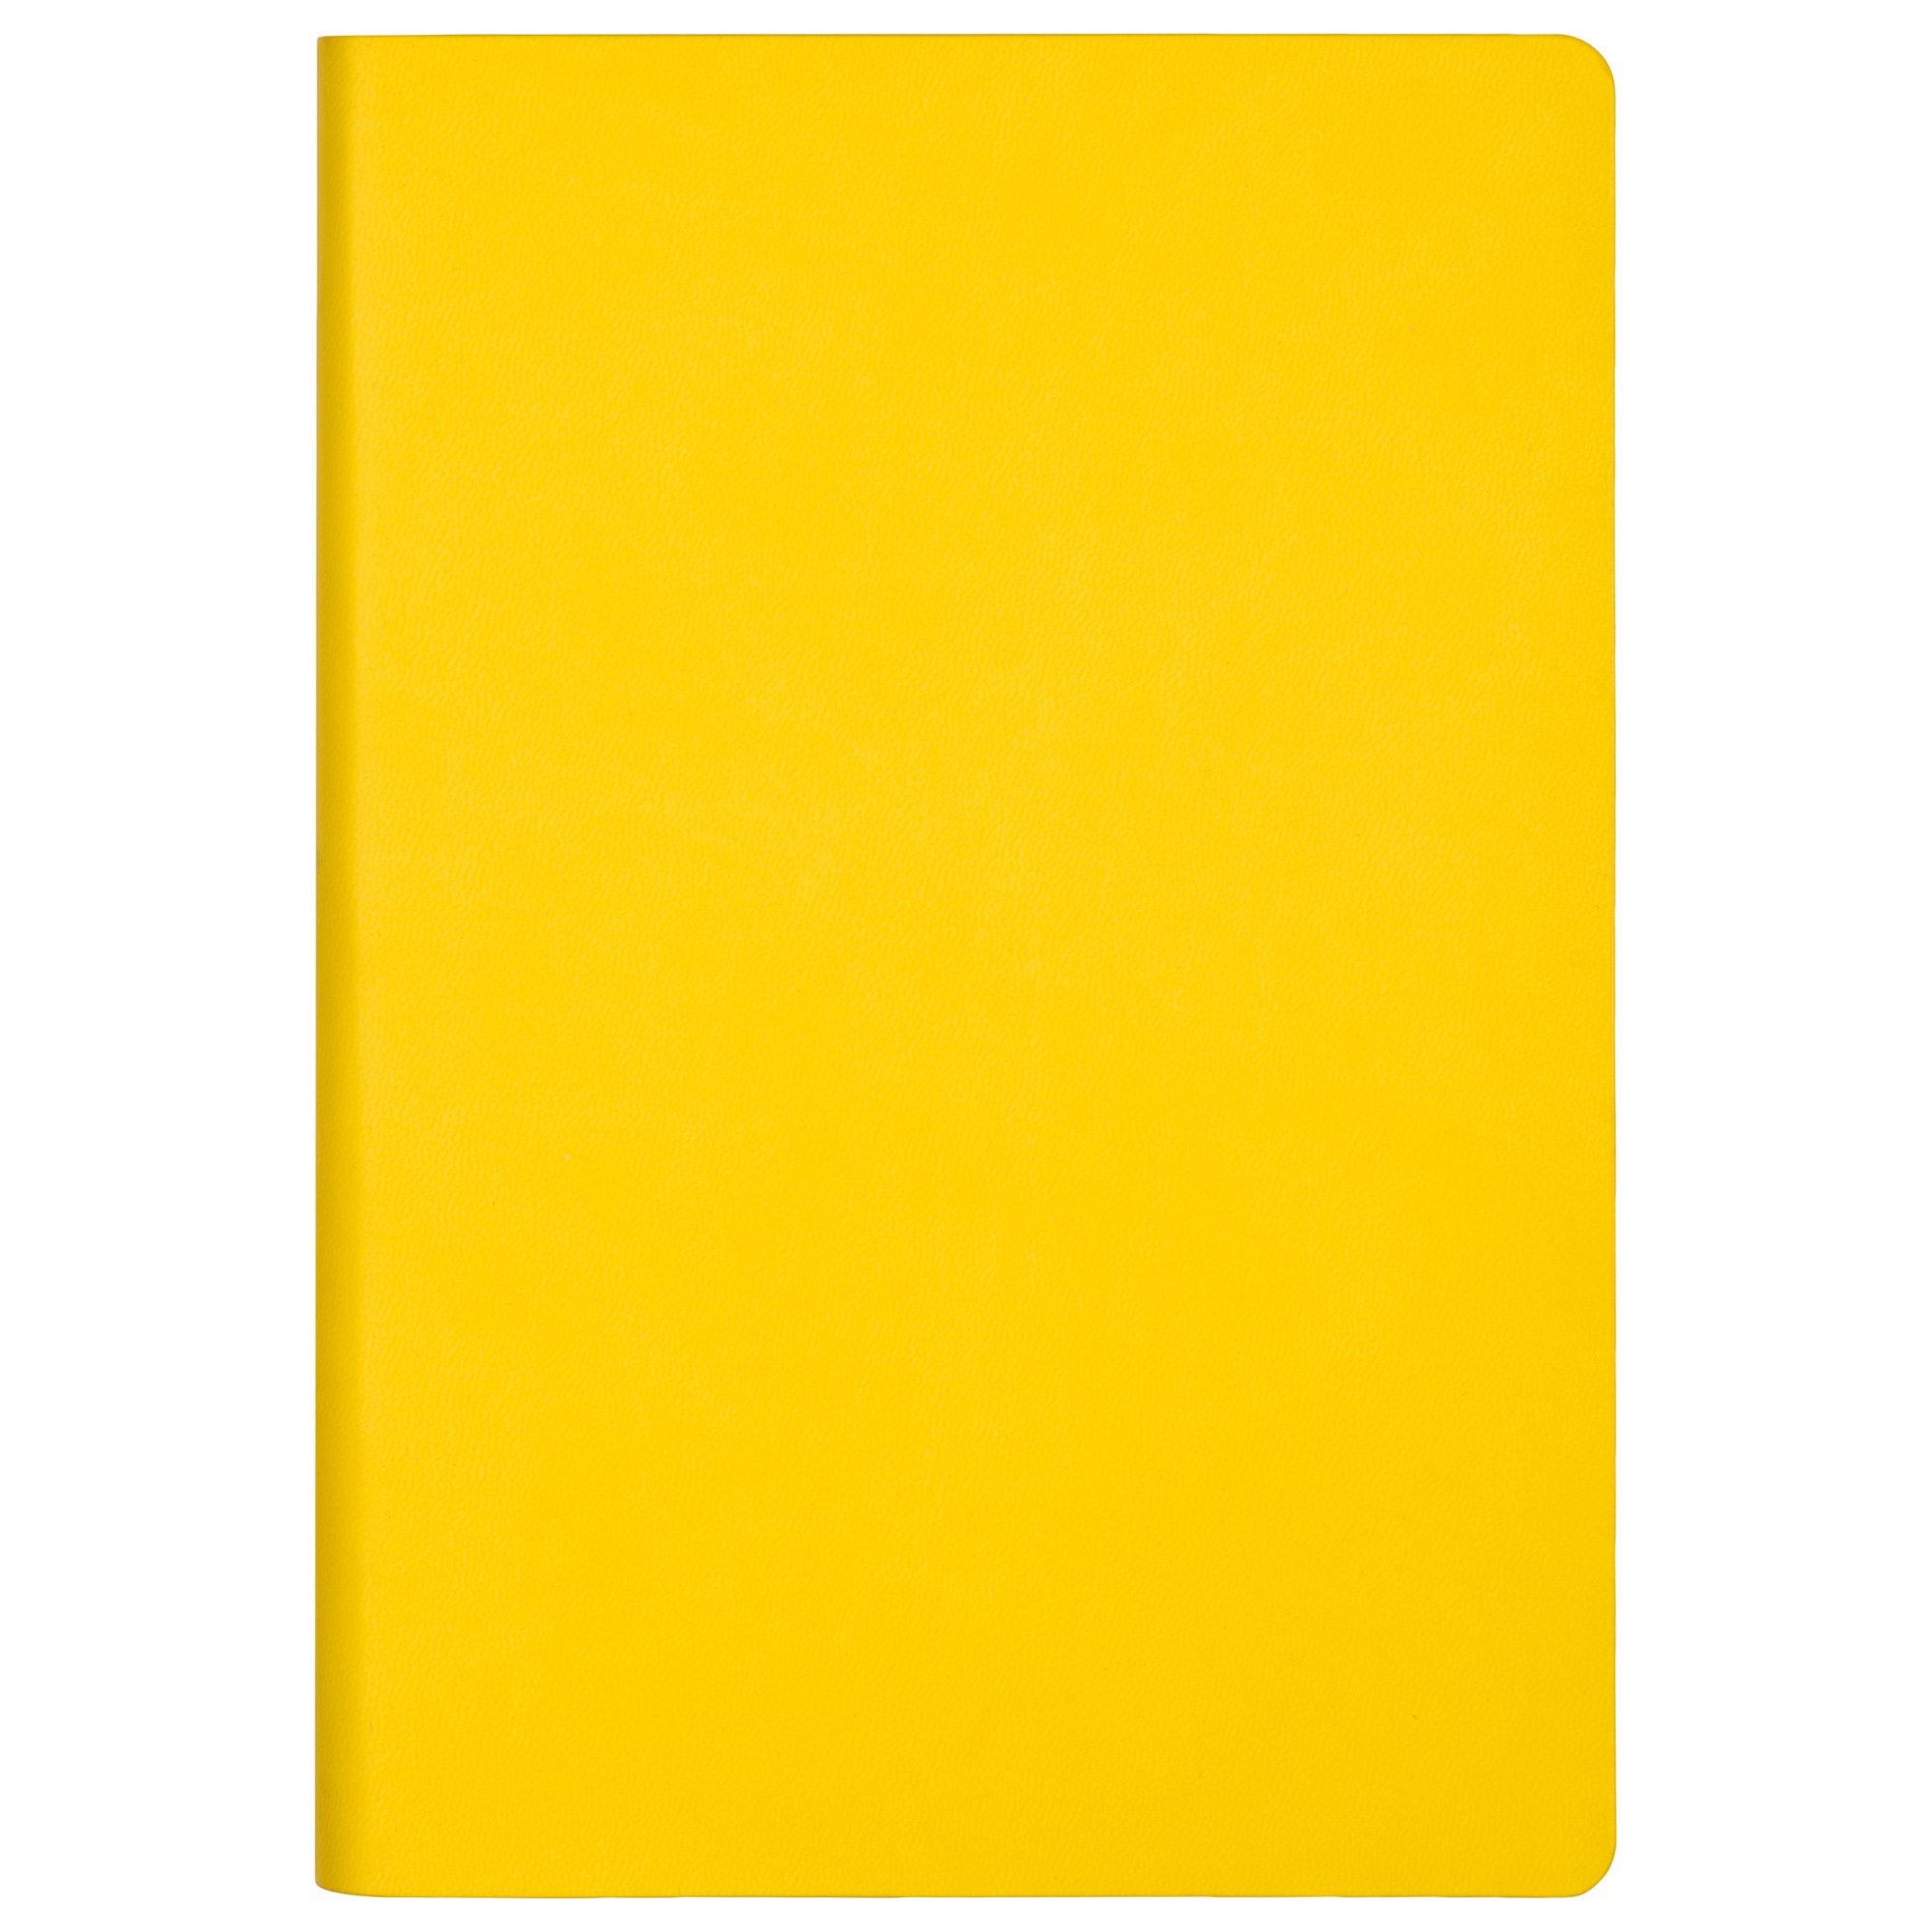 Ежедневник Portobello Trend, Sky, недатированный, желтый (без упаковки, без стикера)